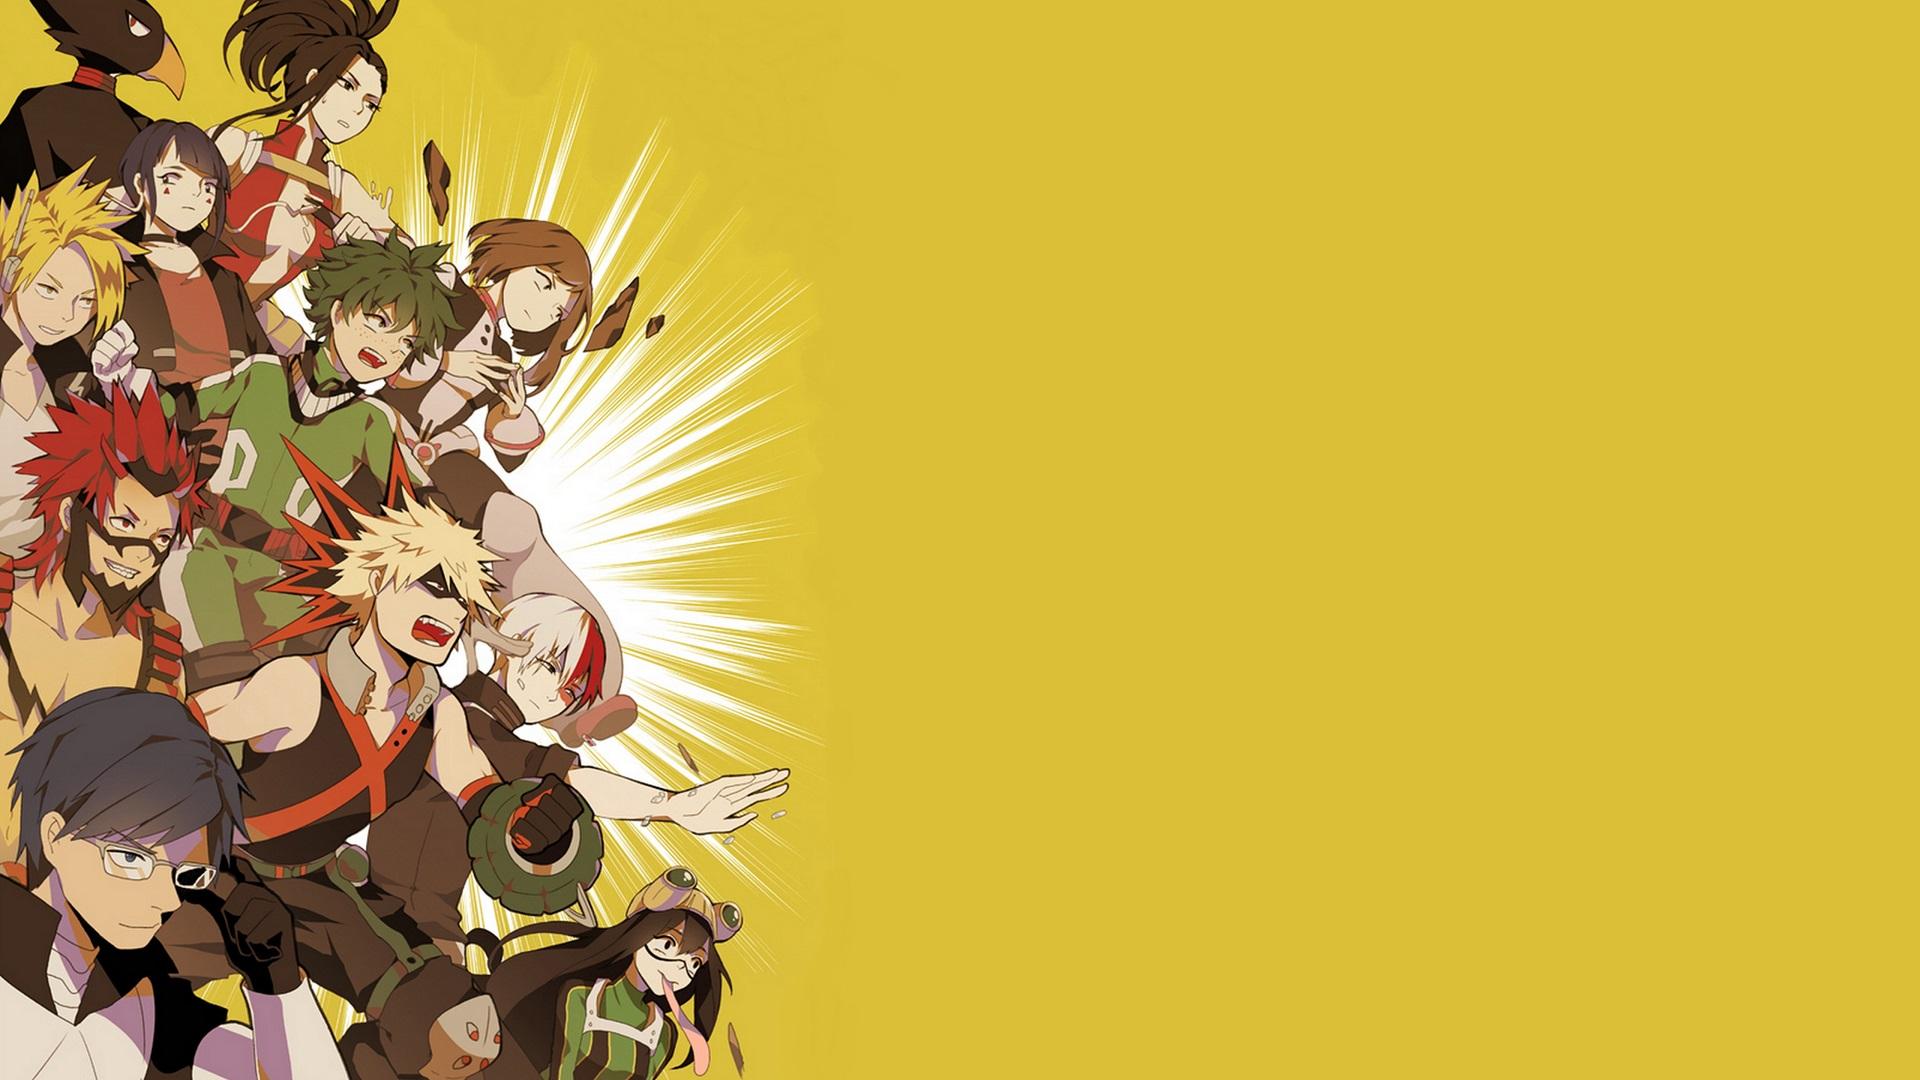 Wallpaper of Anime, My Hero Academia, Izuku Midorya background & HD image